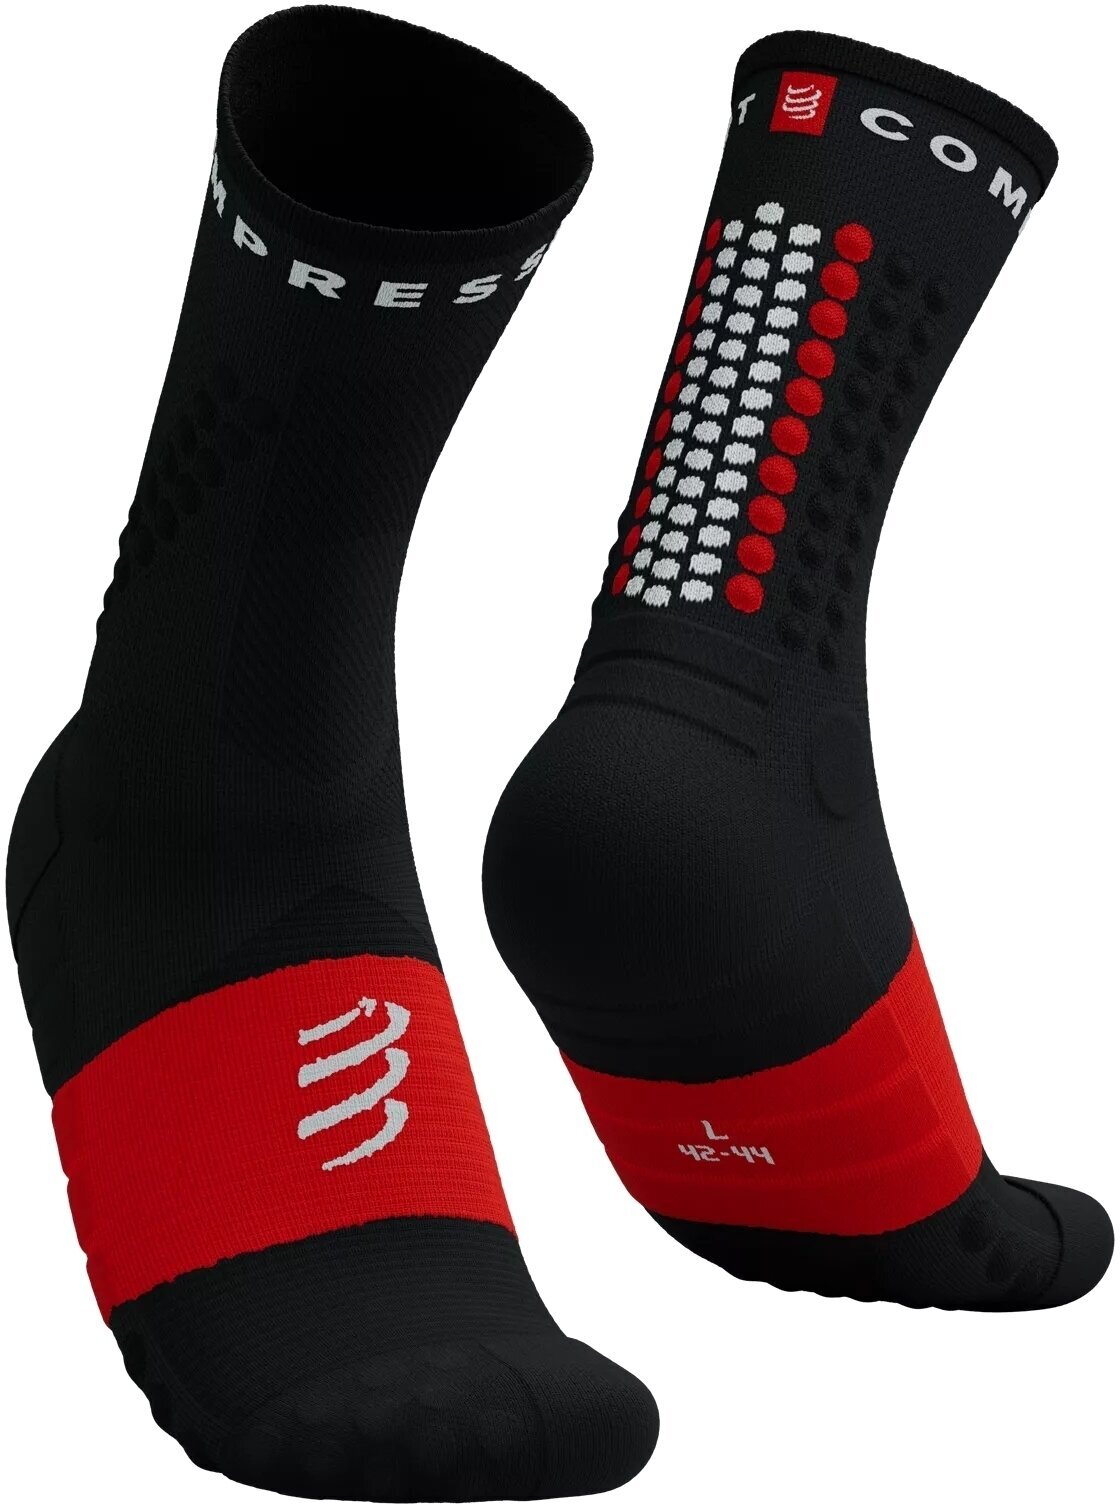 Tekaške nogavice
 Compressport Ultra Trail Socks V2.0 Black/White/Core Red T3 Tekaške nogavice